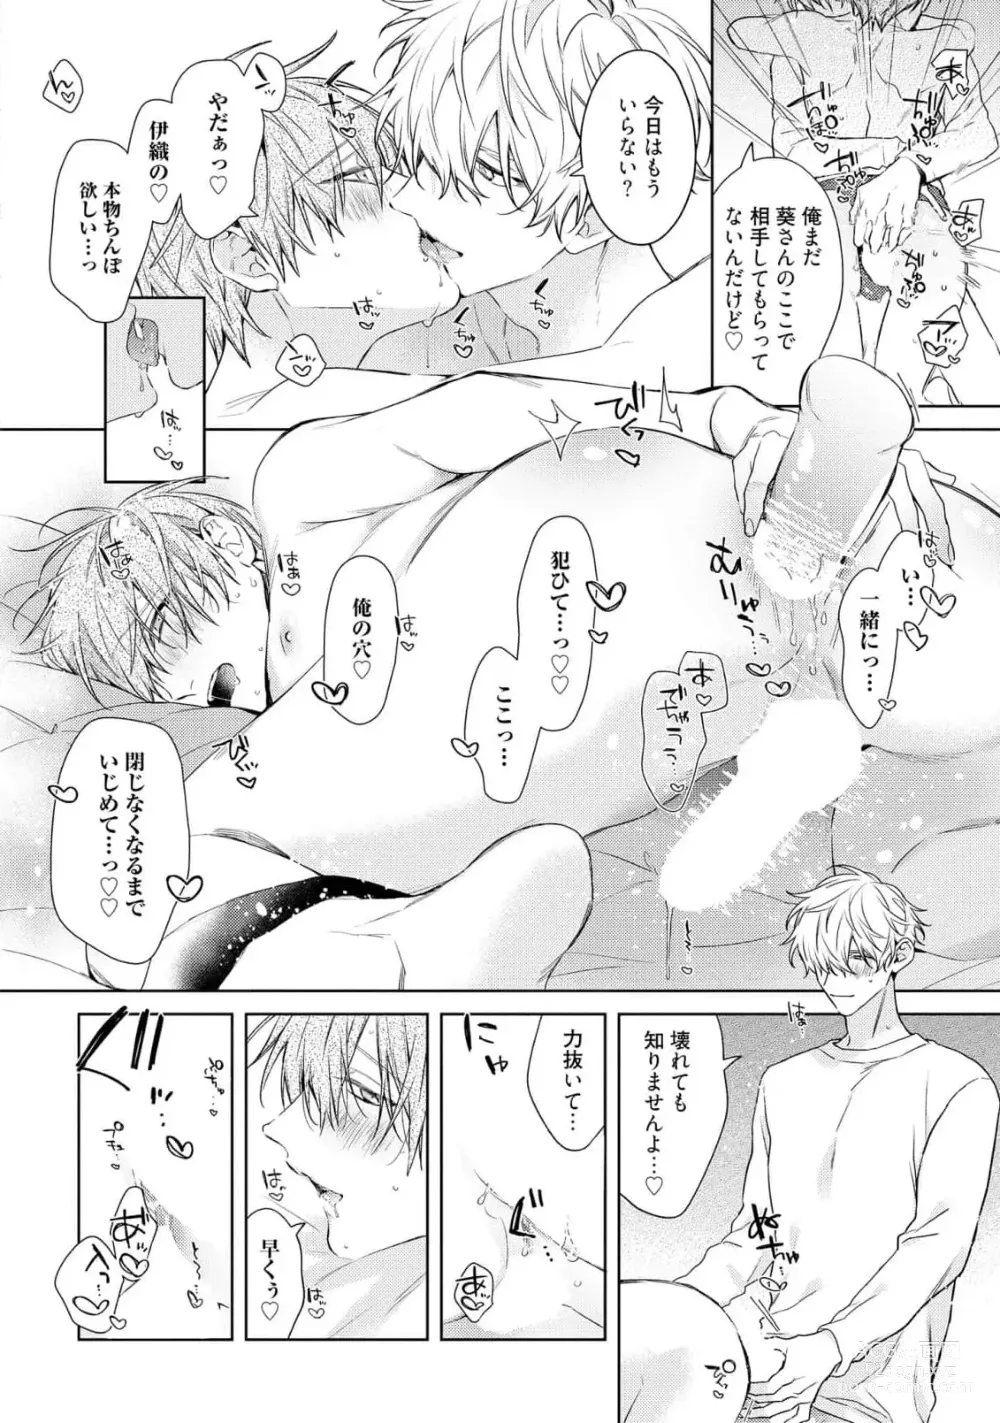 Page 30 of manga Motto! Ecchi wa shuu 7 Kibou Desu!